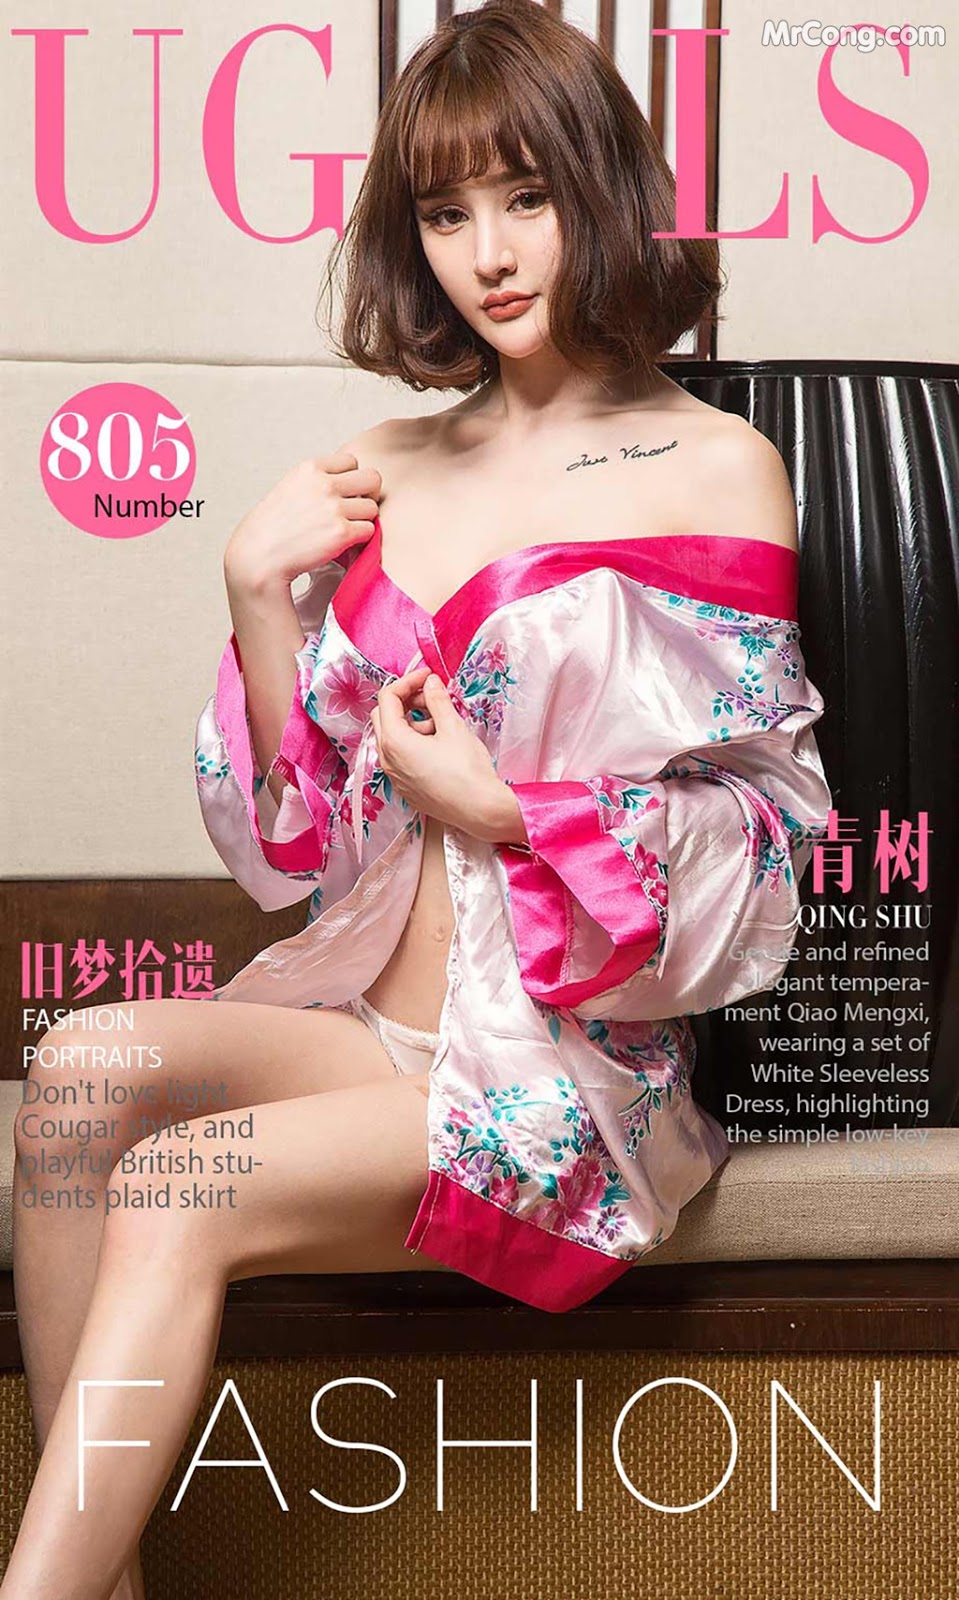 UGIRLS - Ai You Wu App No.805: Model Cheryl (青树) (40 photos)